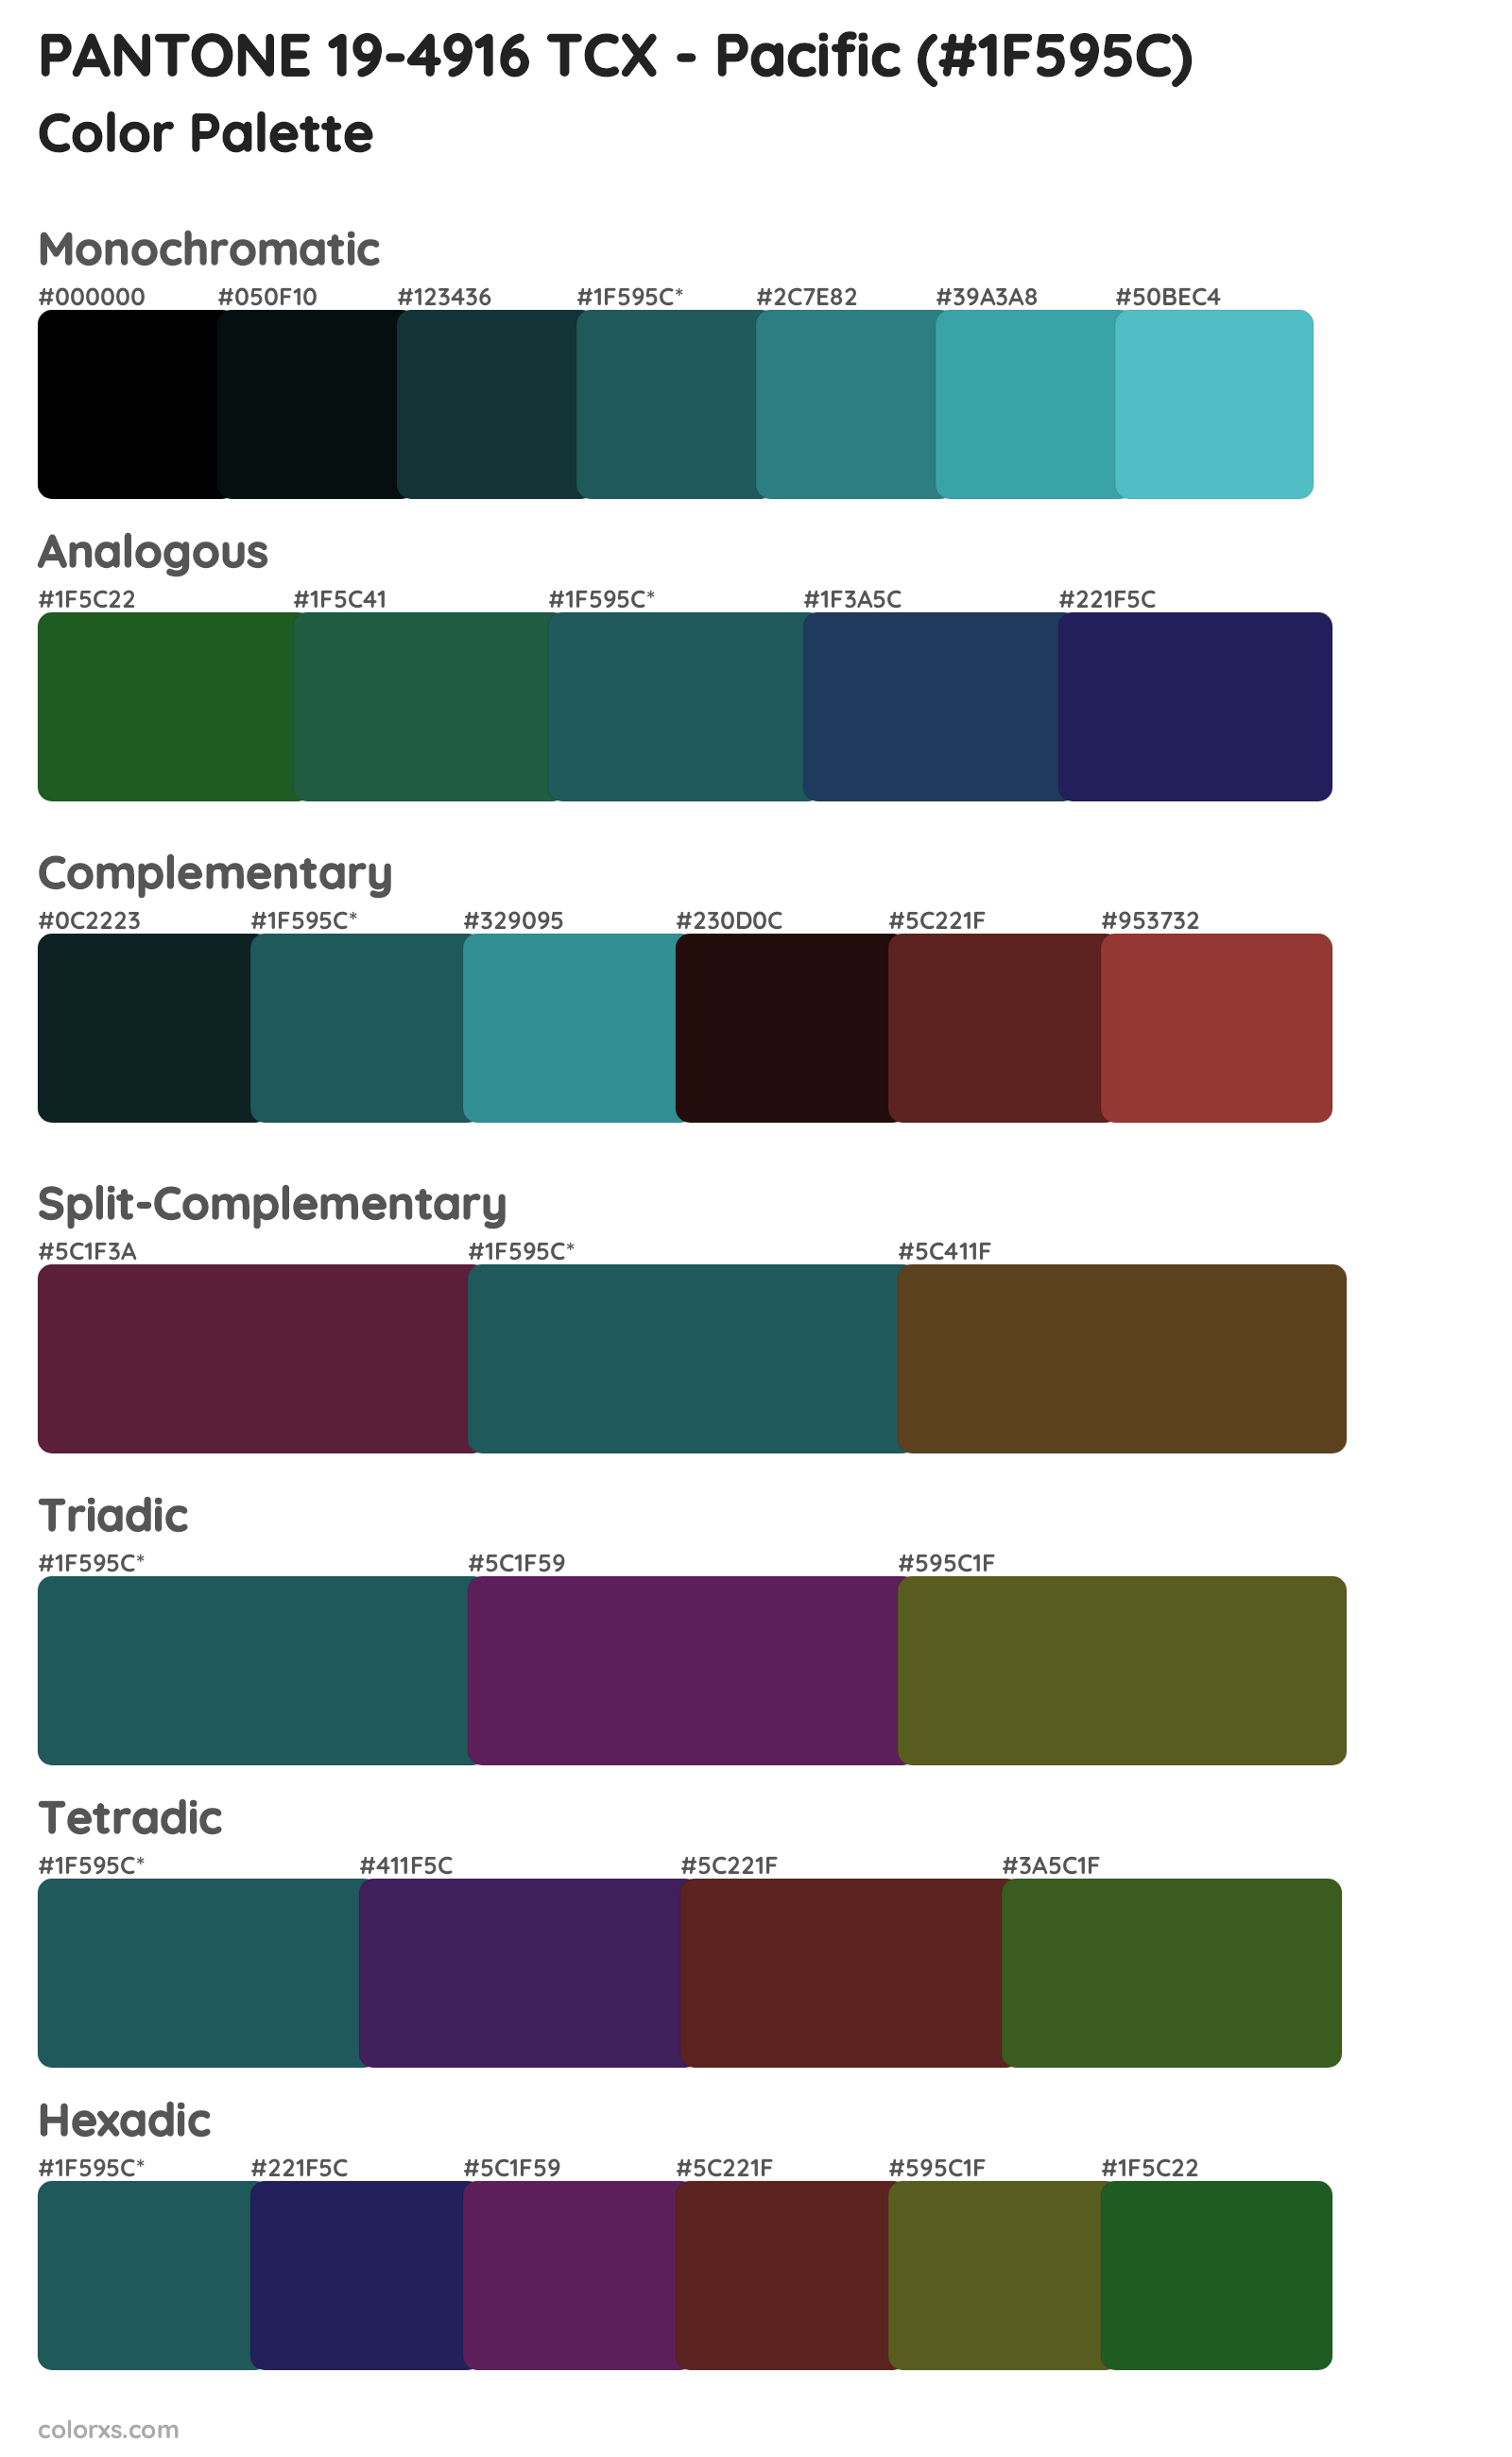 PANTONE 19-4916 TCX - Pacific Color Scheme Palettes